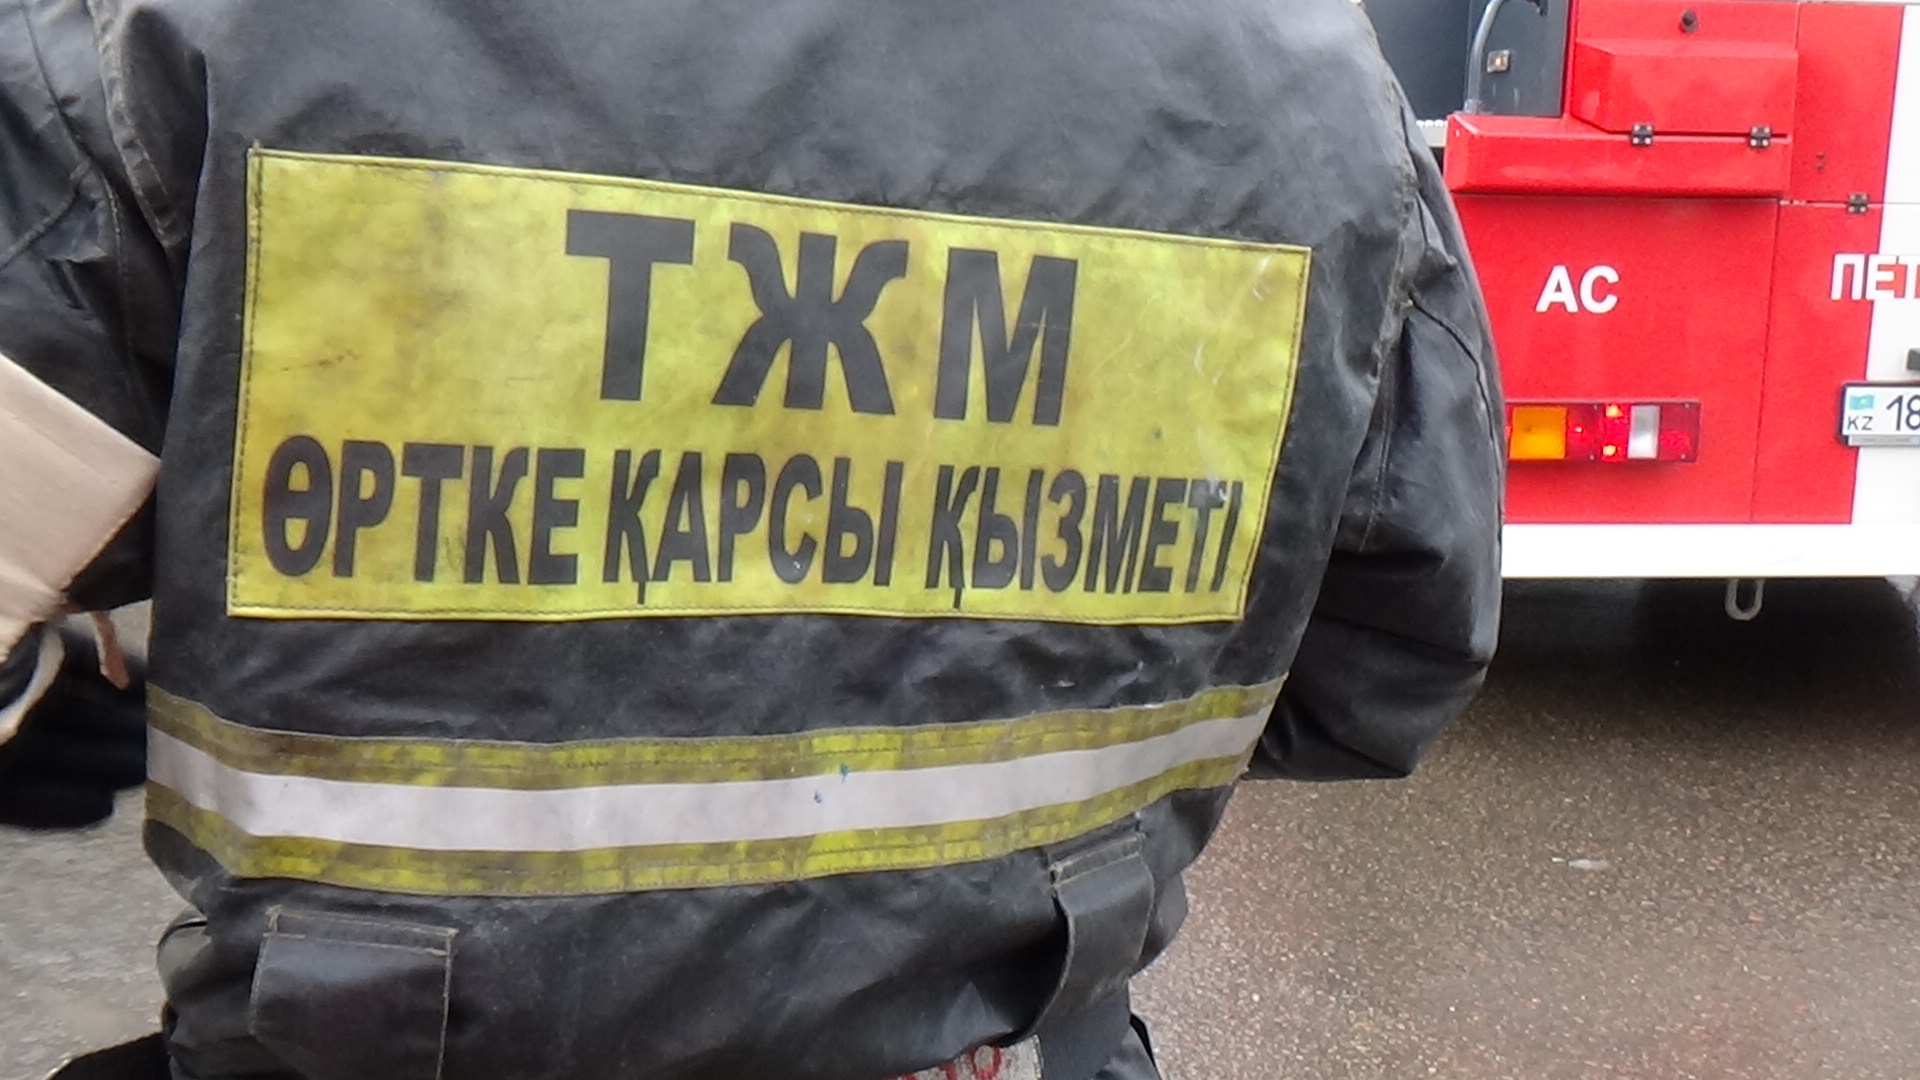 Мужчина погиб, еще один получил ожоги при взрыве в квартире в Павлодаре